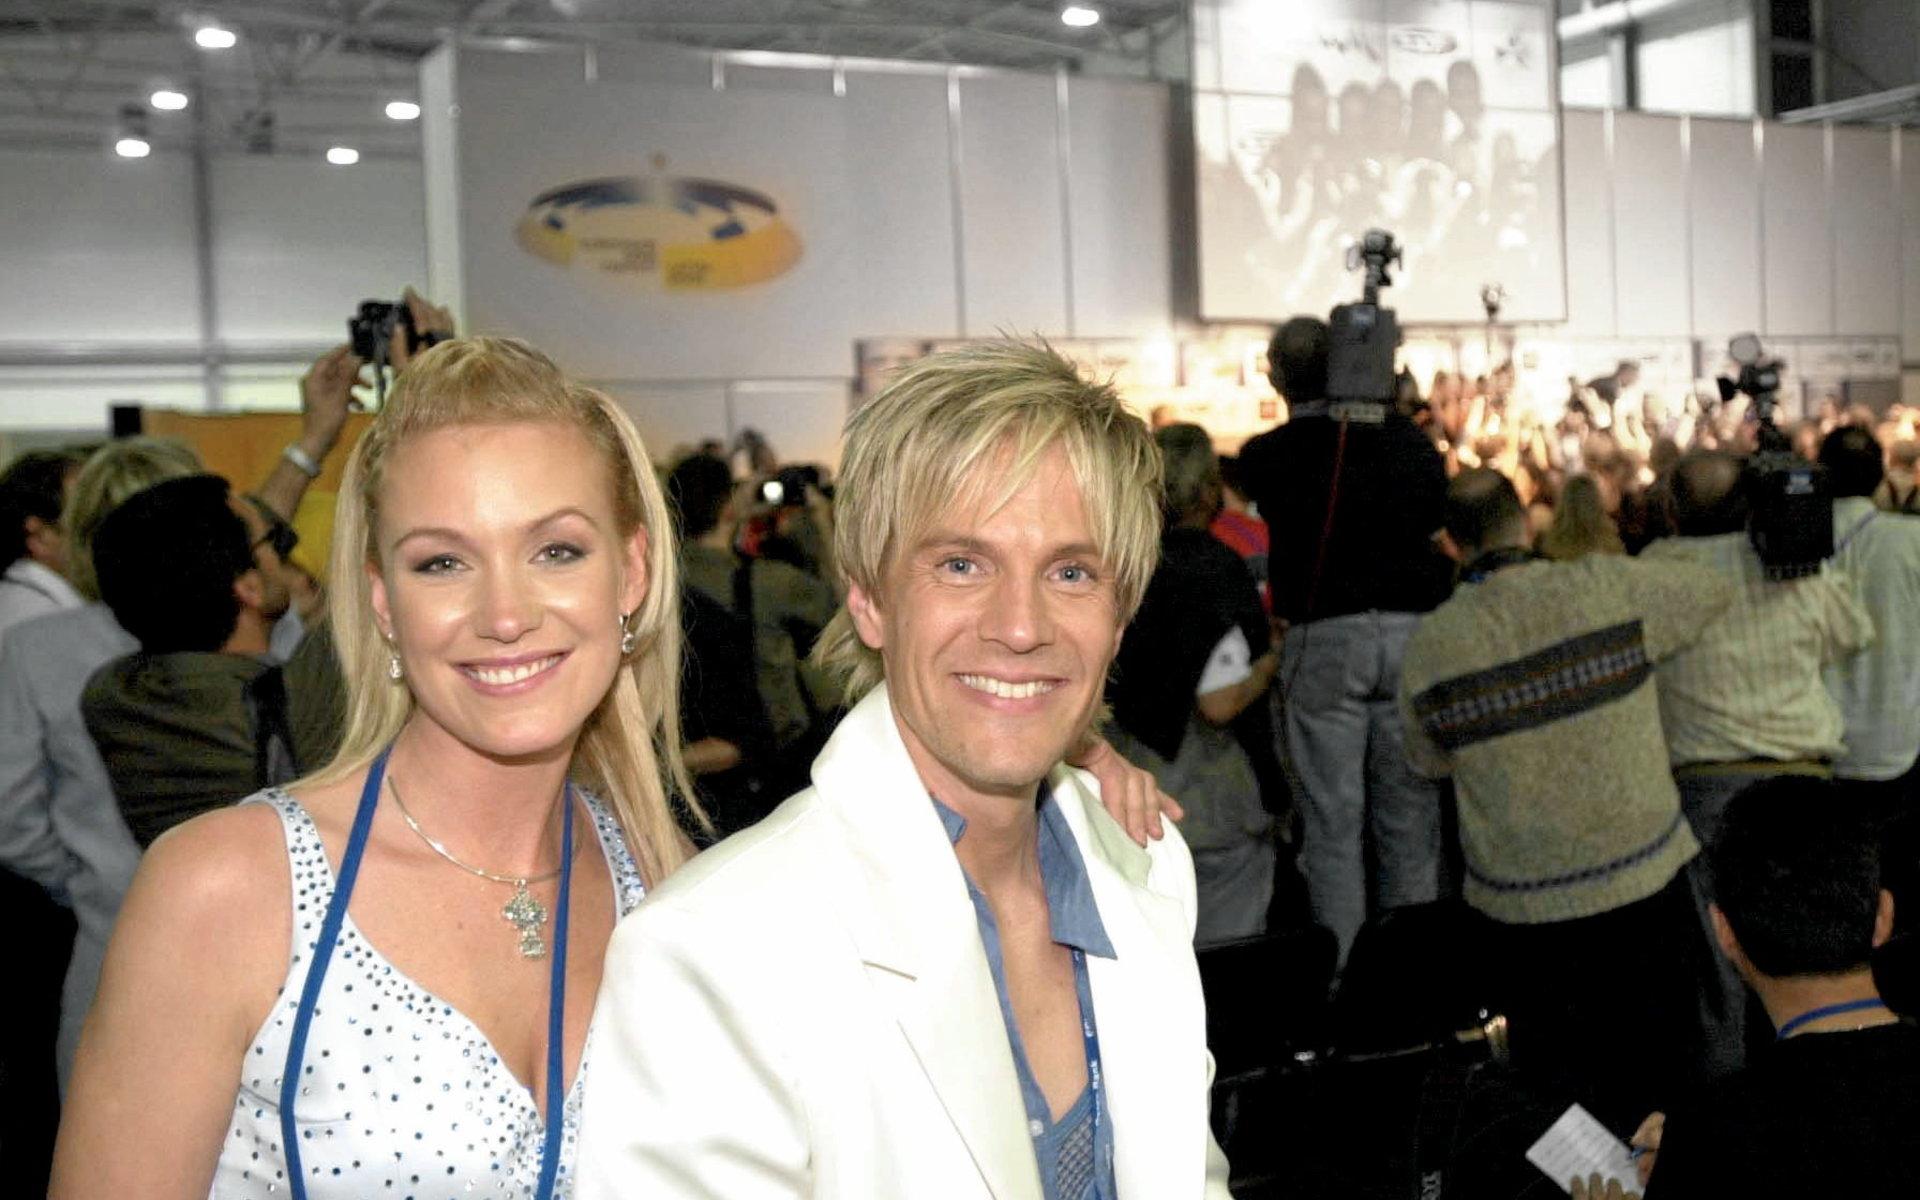 Svenska landslaget i schlager vid Eurovision Song Contest i Riga 2003 utgjordes av Trollhättans egen Jessica Andersson och östgöten Magnus Bäcklund, alias duon Fame.